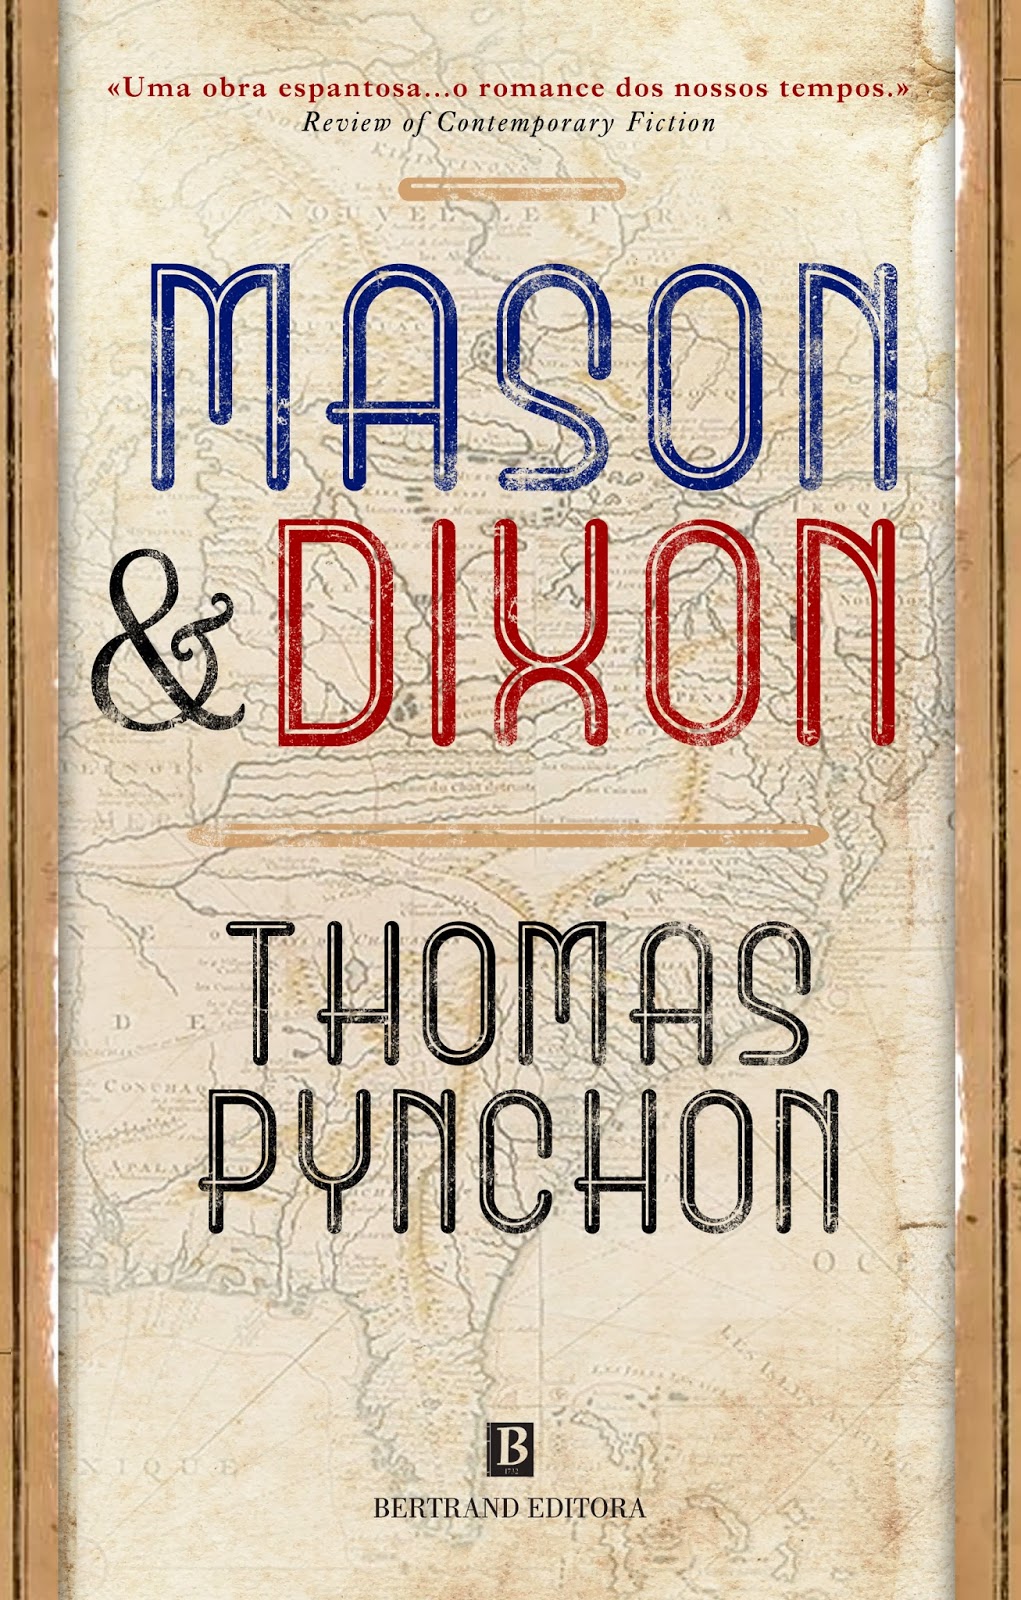 thomas pynchon mason and dixon